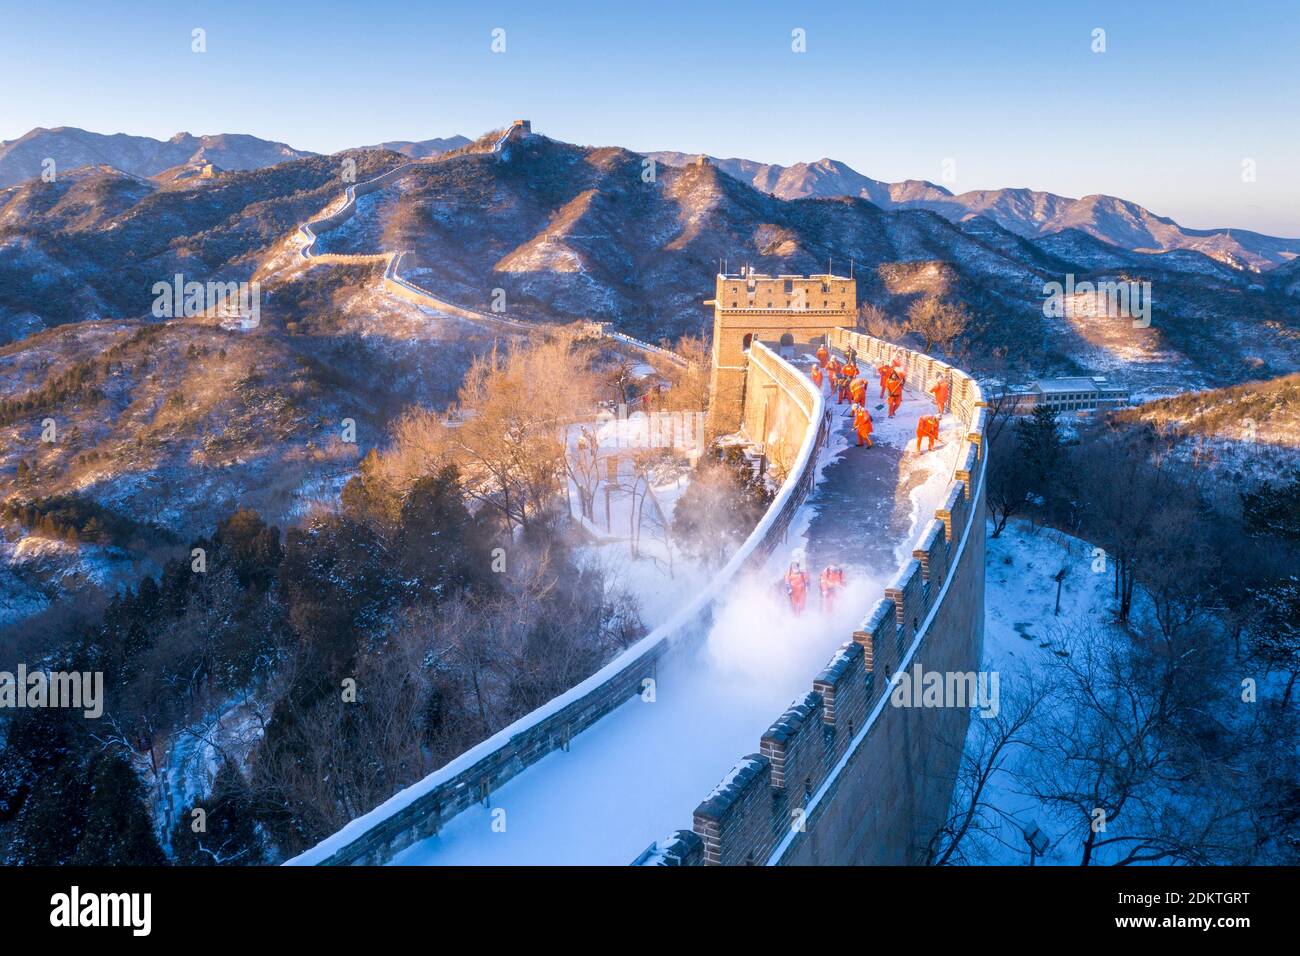 Il sole del mattino splende sulla Grande Muraglia Badaling ricoperta di neve, presentando il magnifico scenario settentrionale nella distrazione di Yanqing, Pechino, Cina, 12 De Foto Stock